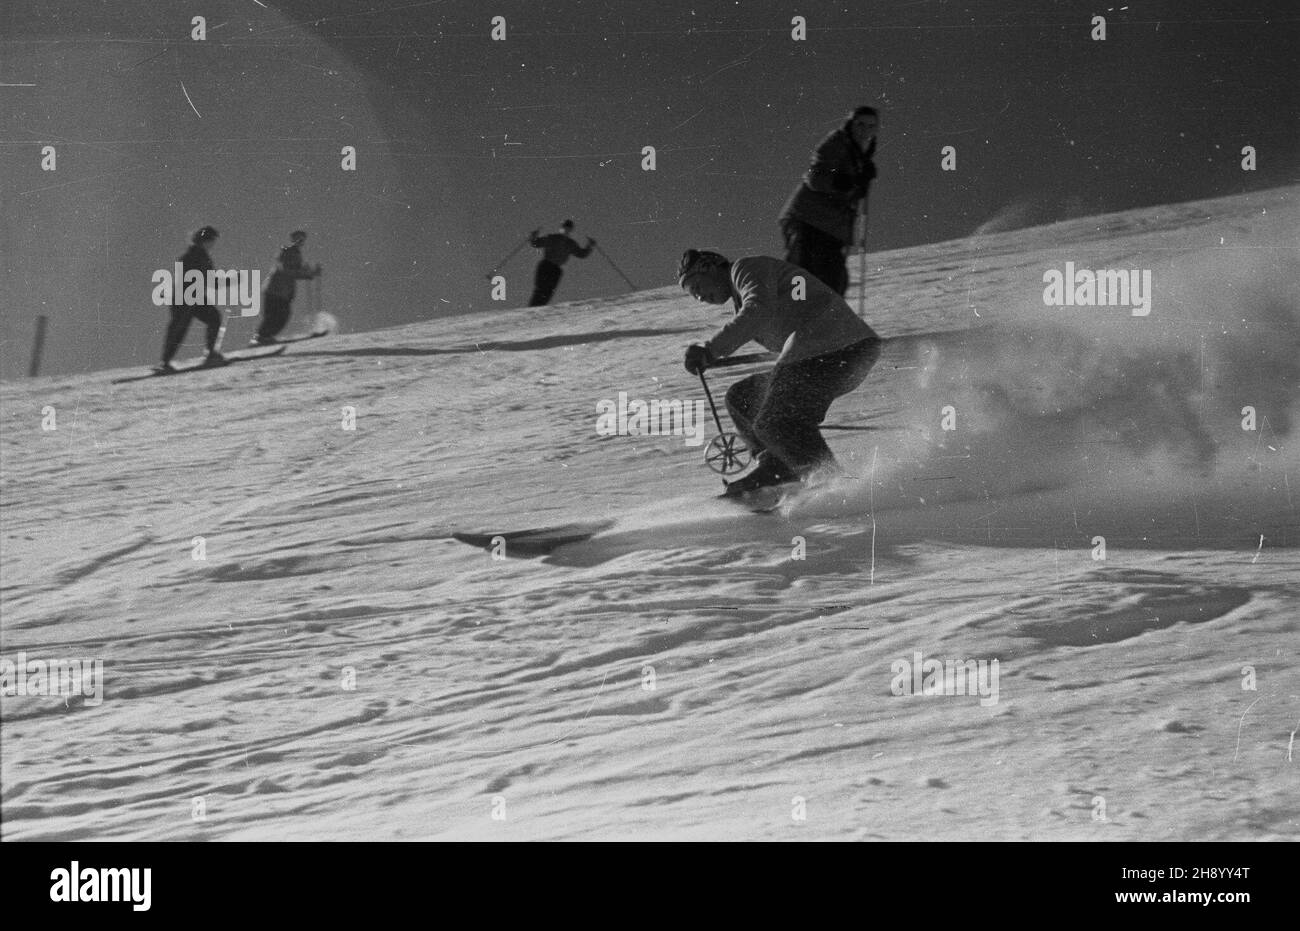 Zakopane, 1947. Narciarz w Tatrach. bb/gr  PAP/Stanis³aw D¹browiecki      Zakopane, 1947. A skier in the Tatra Mountains.  bb/gr  PAP/Stanis³aw D¹browiecki Stock Photo